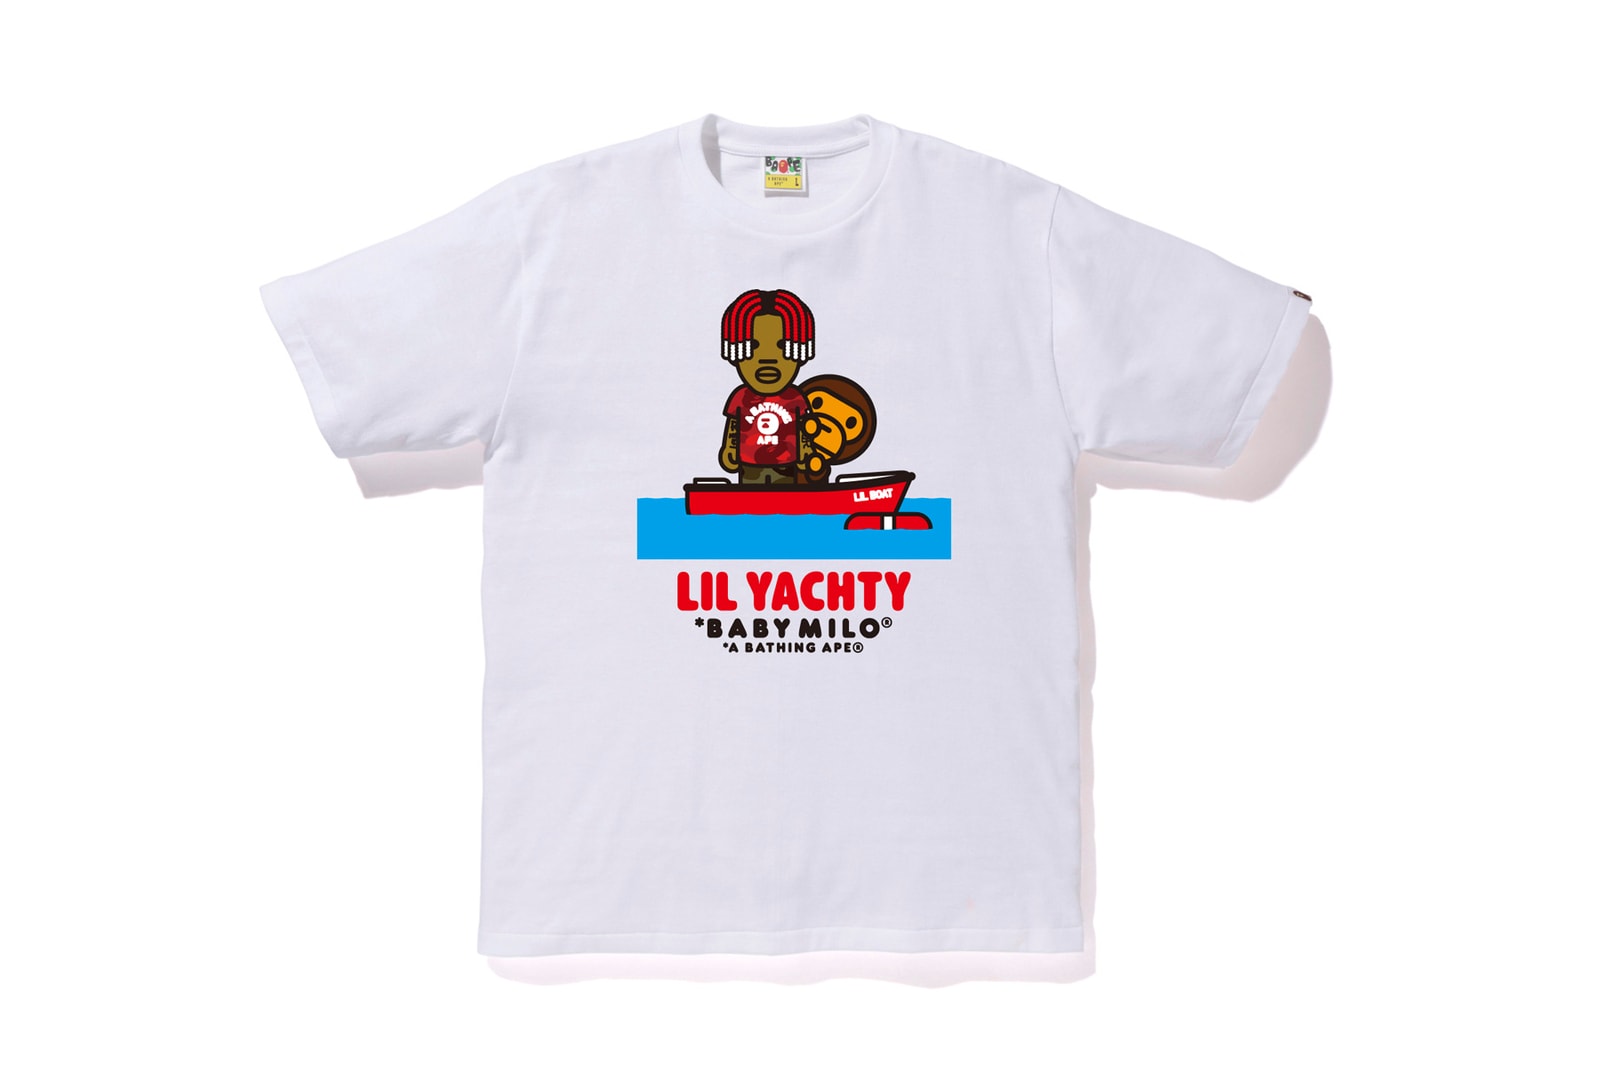 ベイプ エイプ リル・ヨッティ BAPE APE Lil Yachty Tシャツ パーカー オンライン 